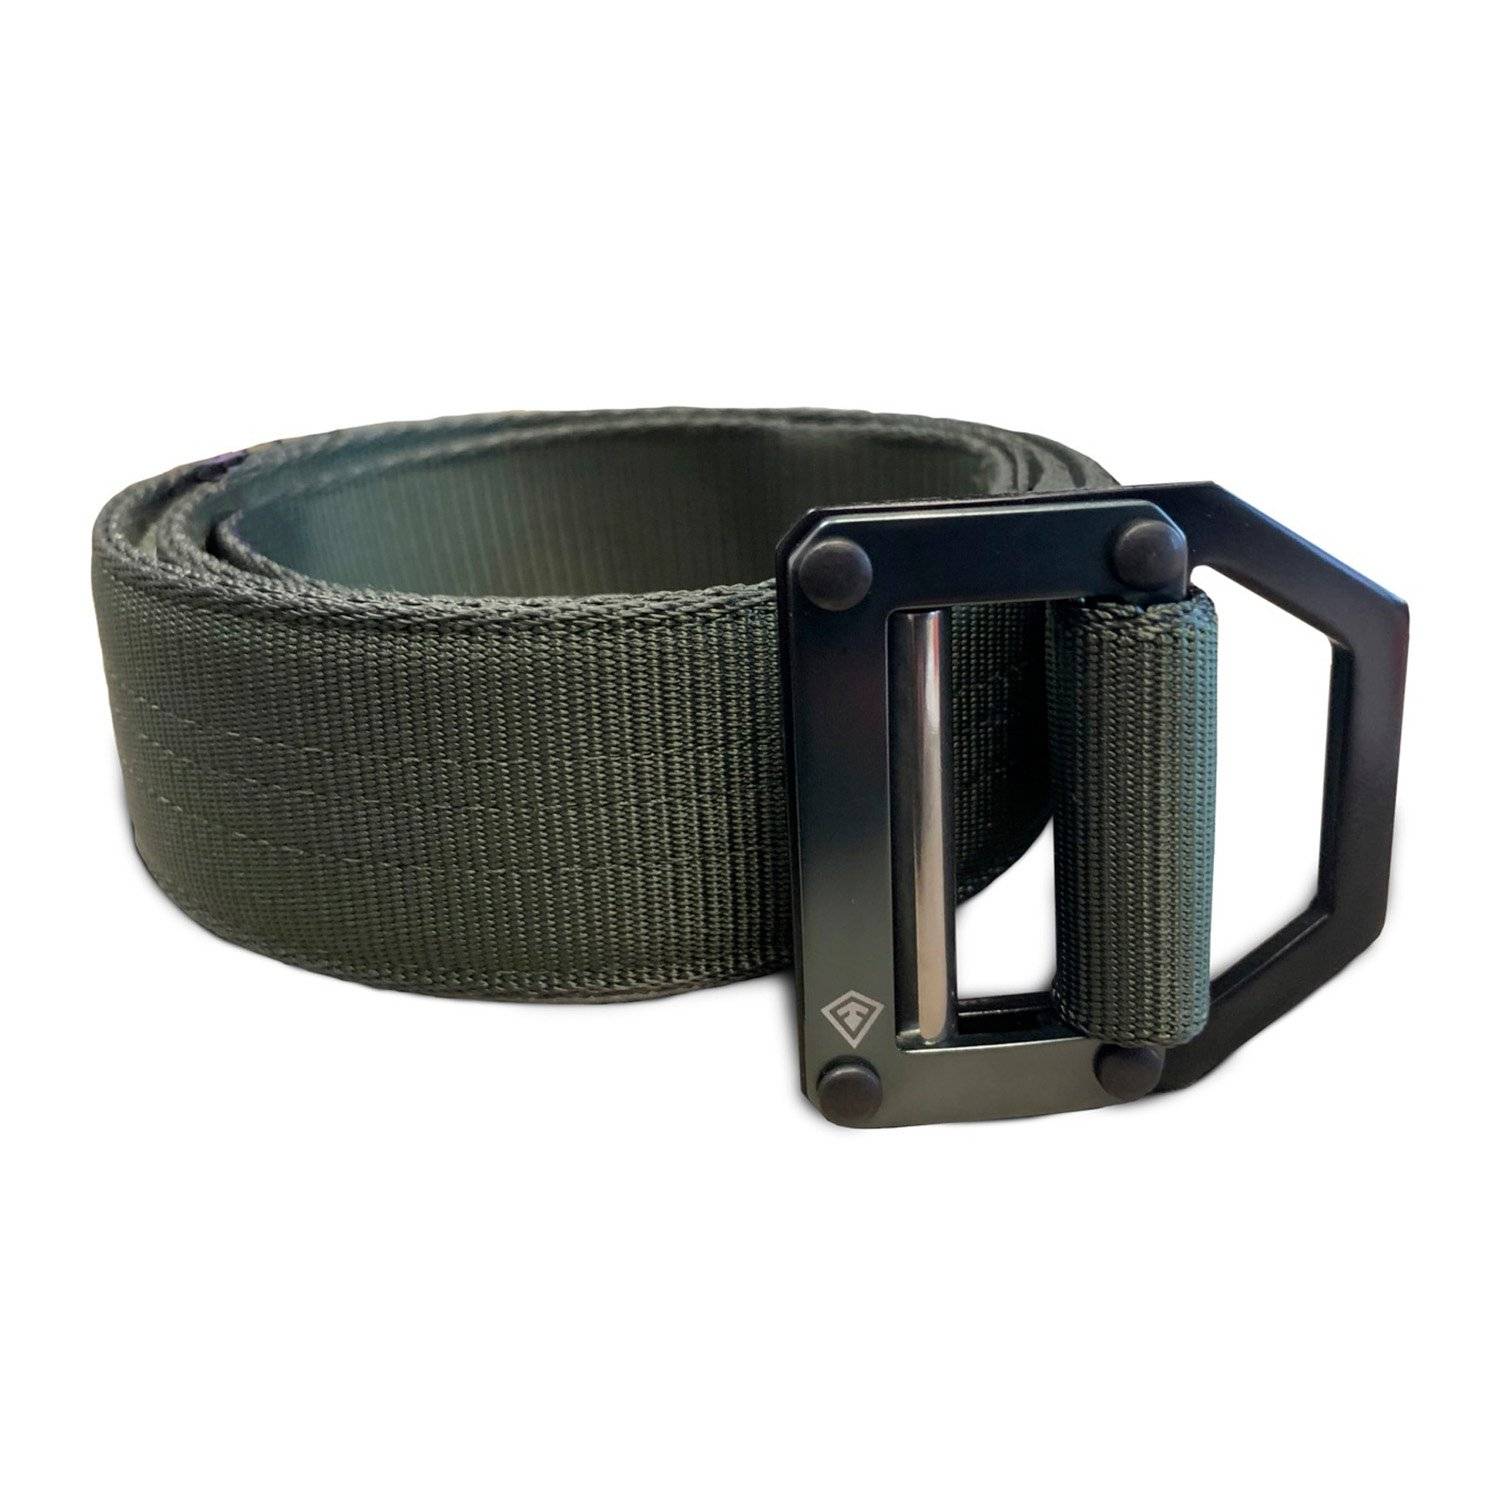 First Tactical 1.75” Tactical Belt | Duty Belts